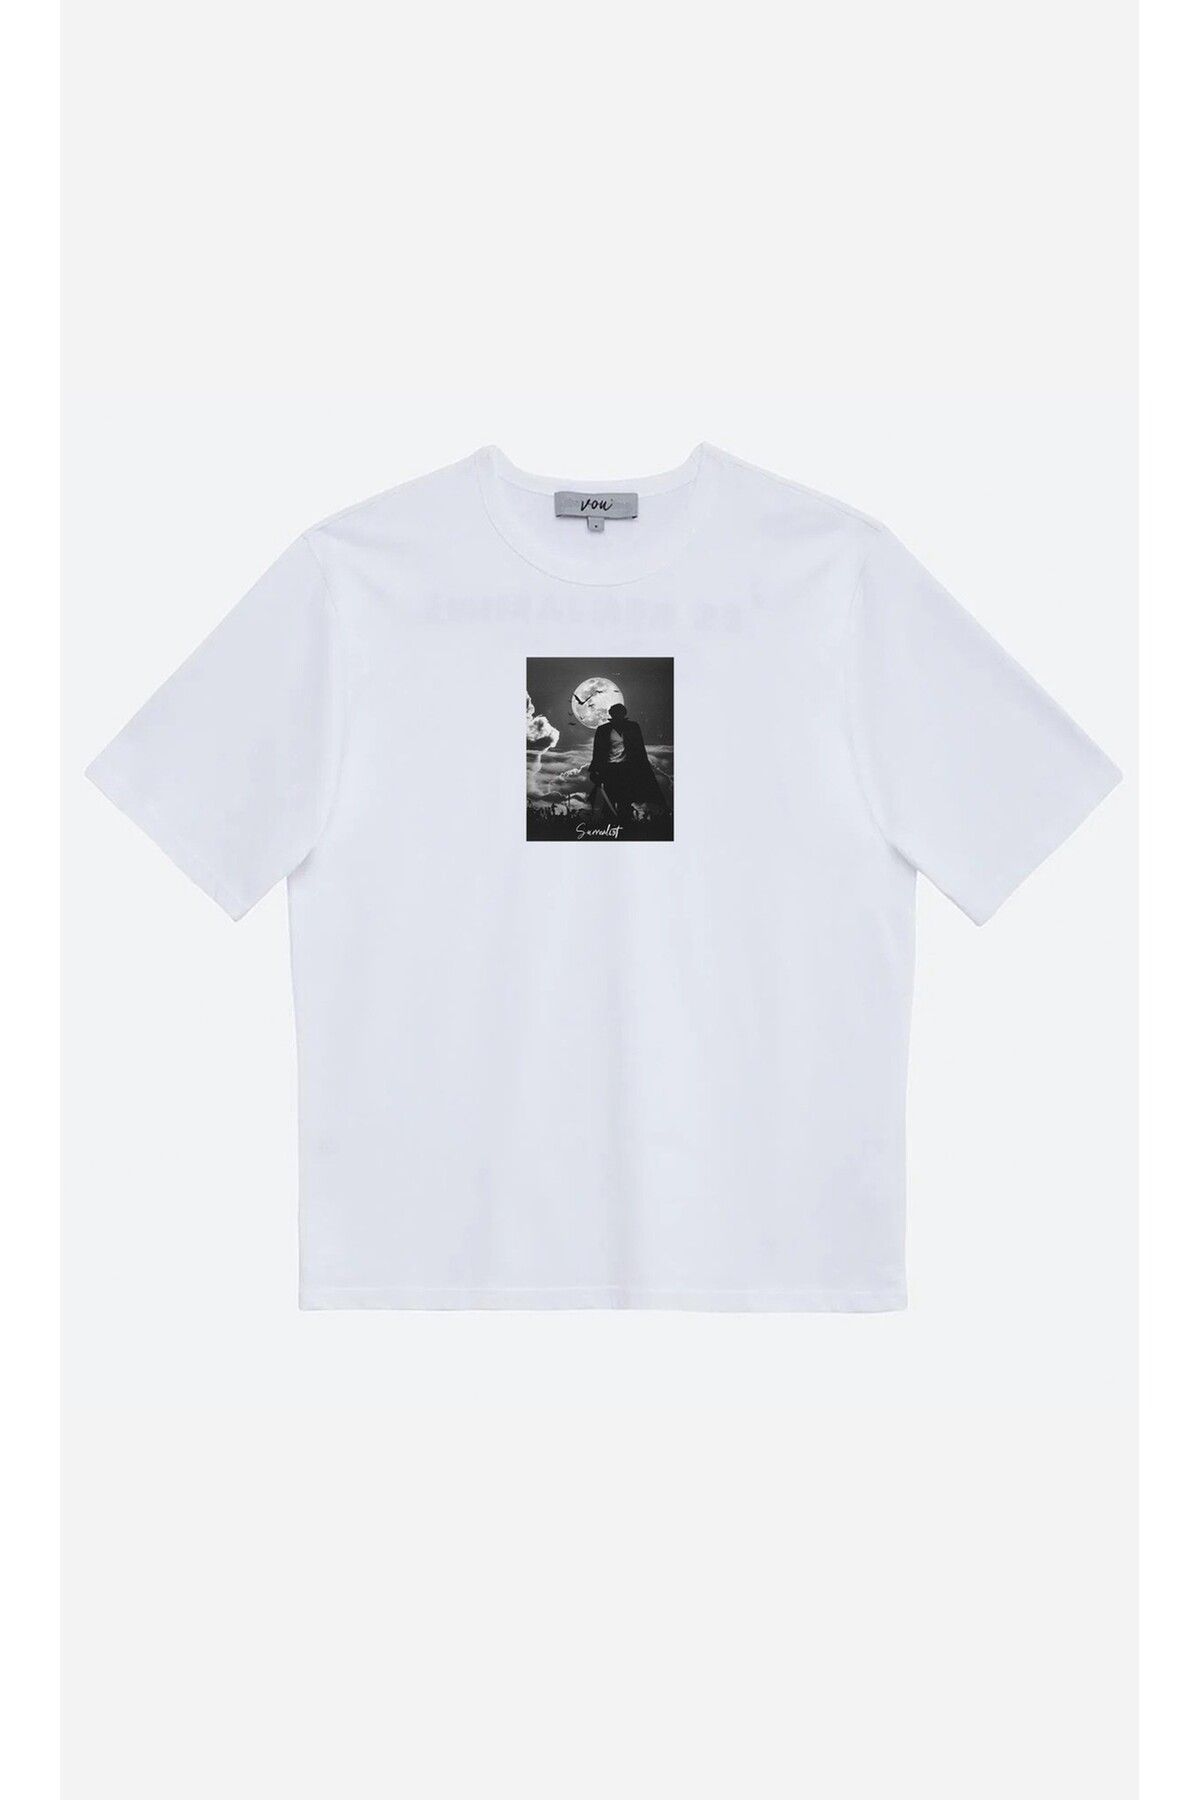 VOU 1065- Surrealist Oversize Unisex T-Shirt